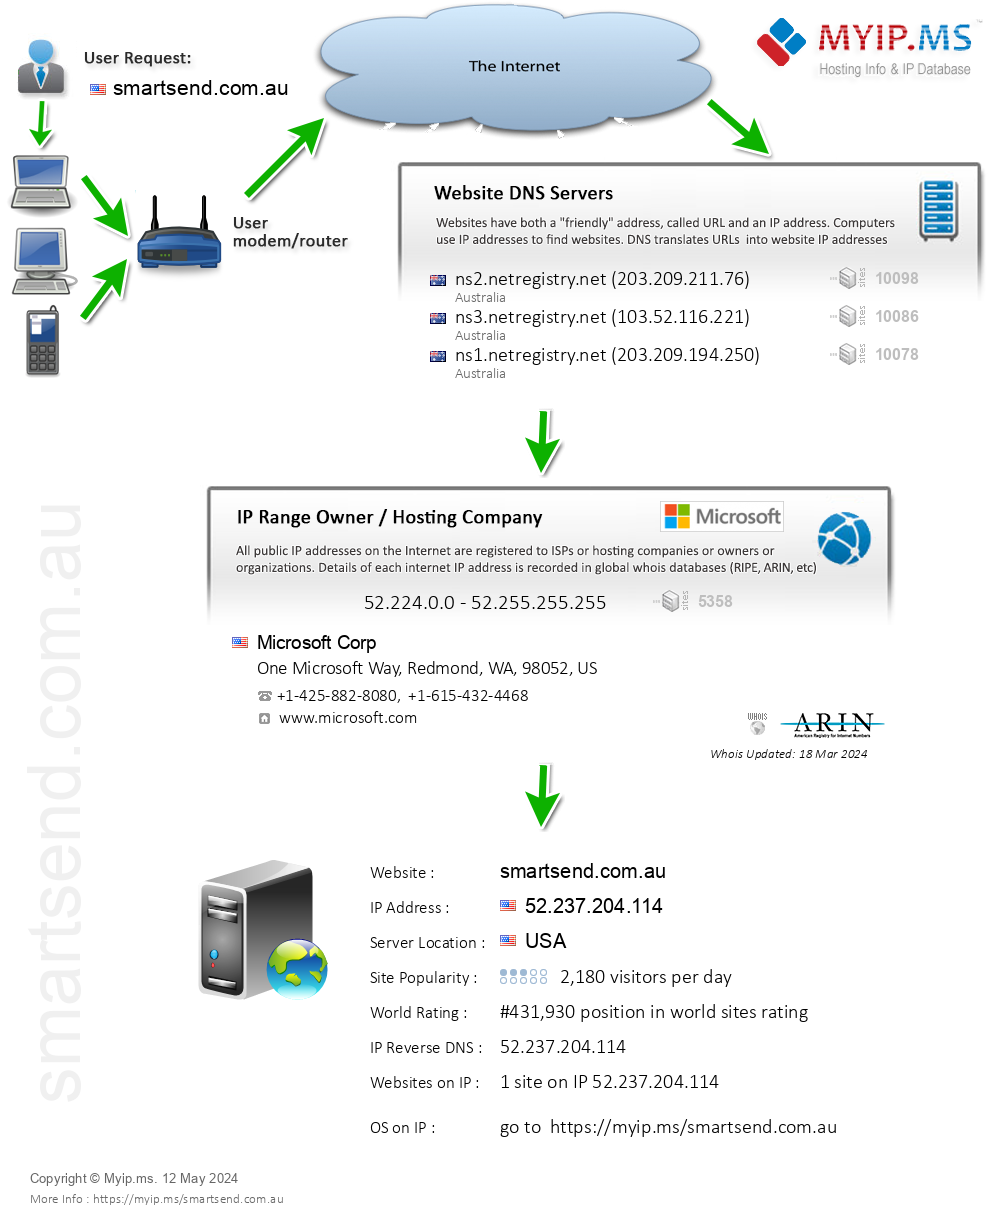 Smartsend.com.au - Website Hosting Visual IP Diagram